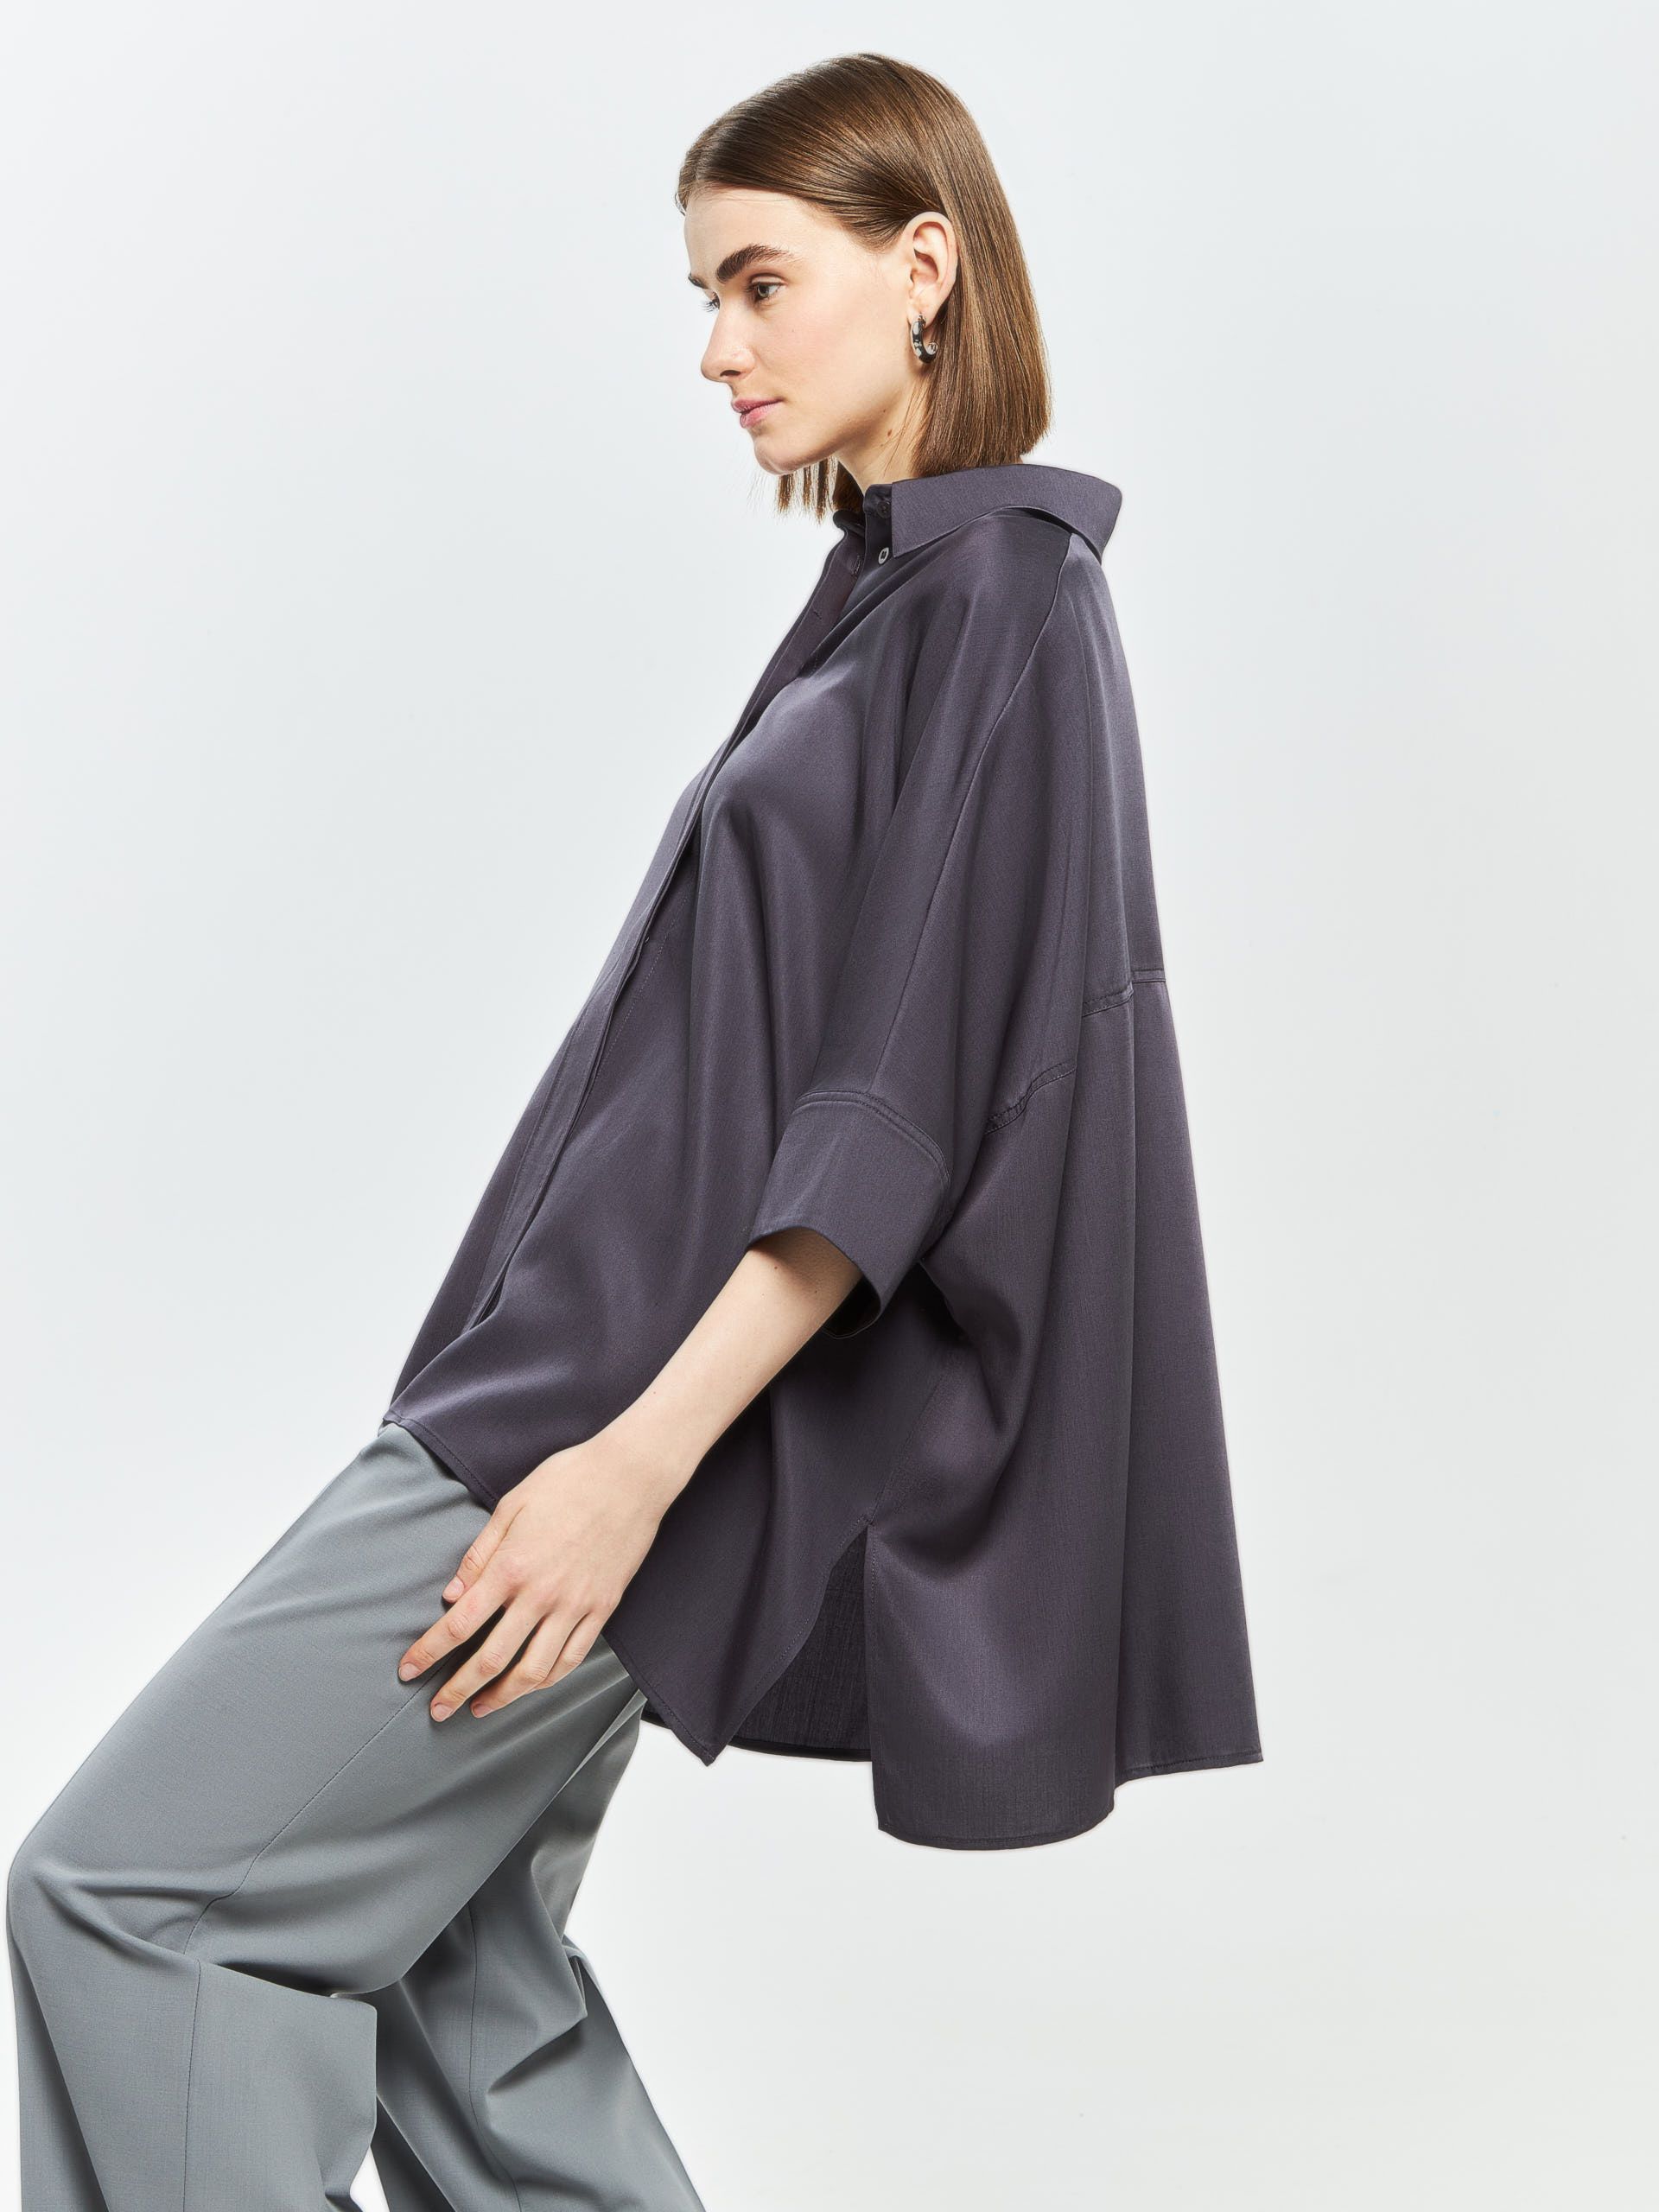 Лёгкая женственная блузка BREVIS из 100% эко-материала «тенсель». Изображение 2